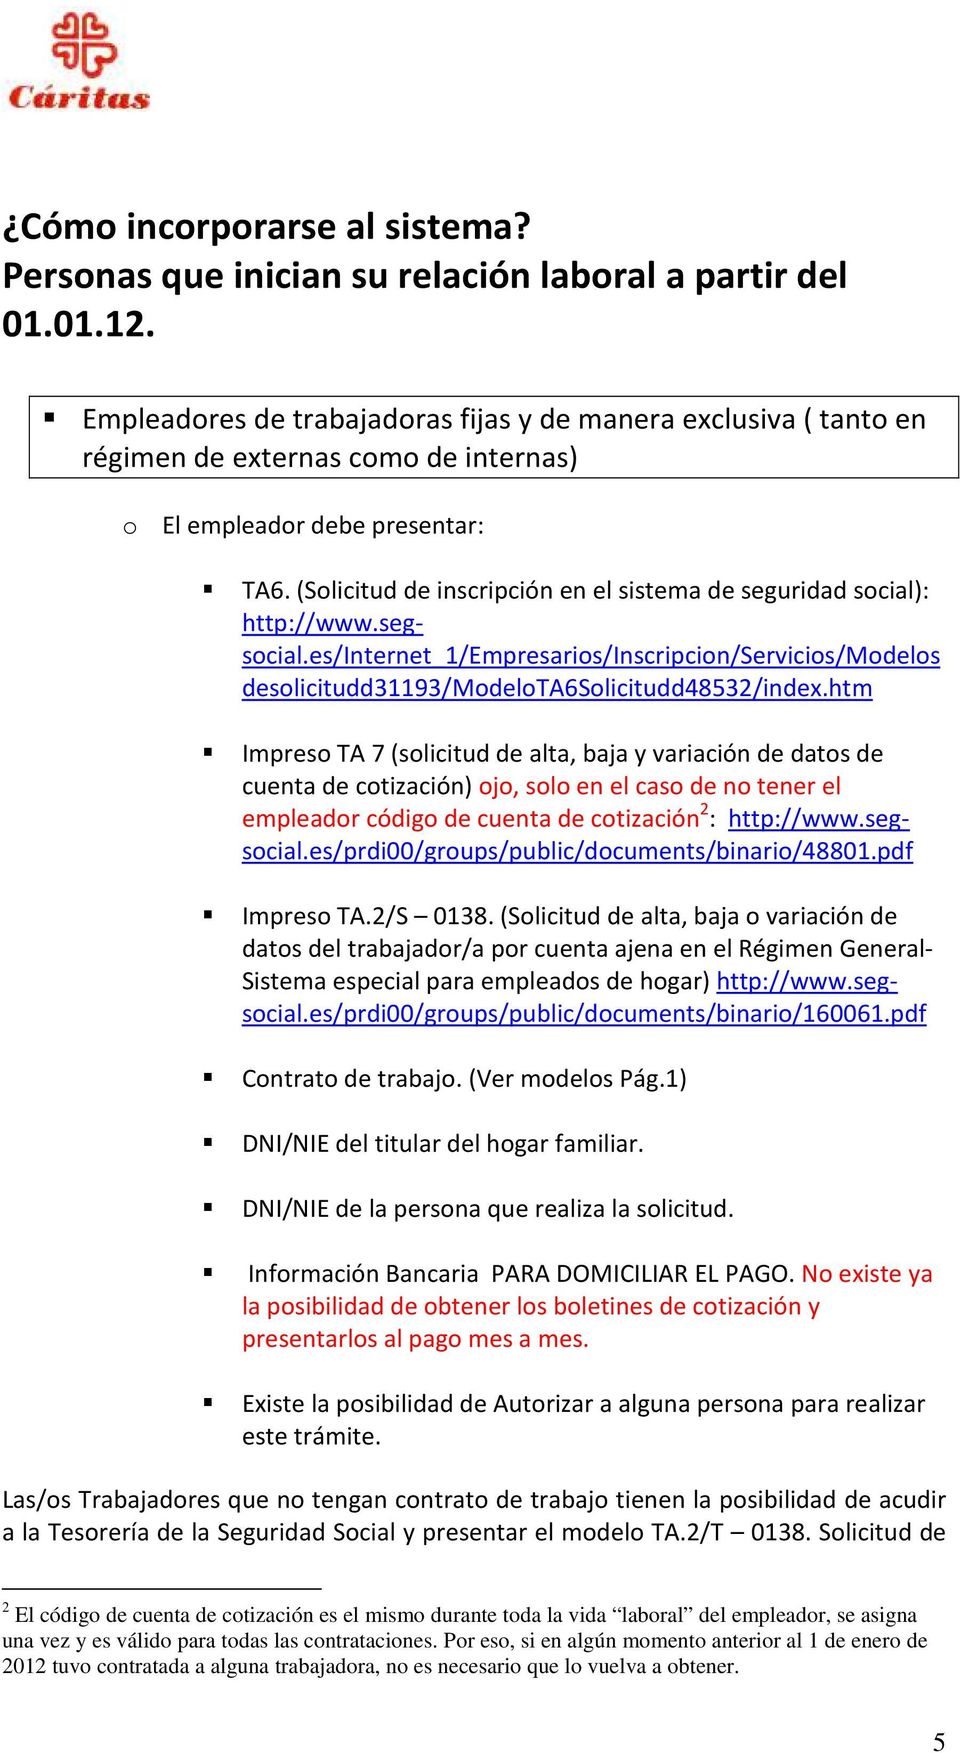 (Solicitud de inscripción en el sistema de seguridad social): http://www.segsocial.es/internet_1/empresarios/inscripcion/servicios/modelos desolicitudd31193/modelota6solicitudd48532/index.